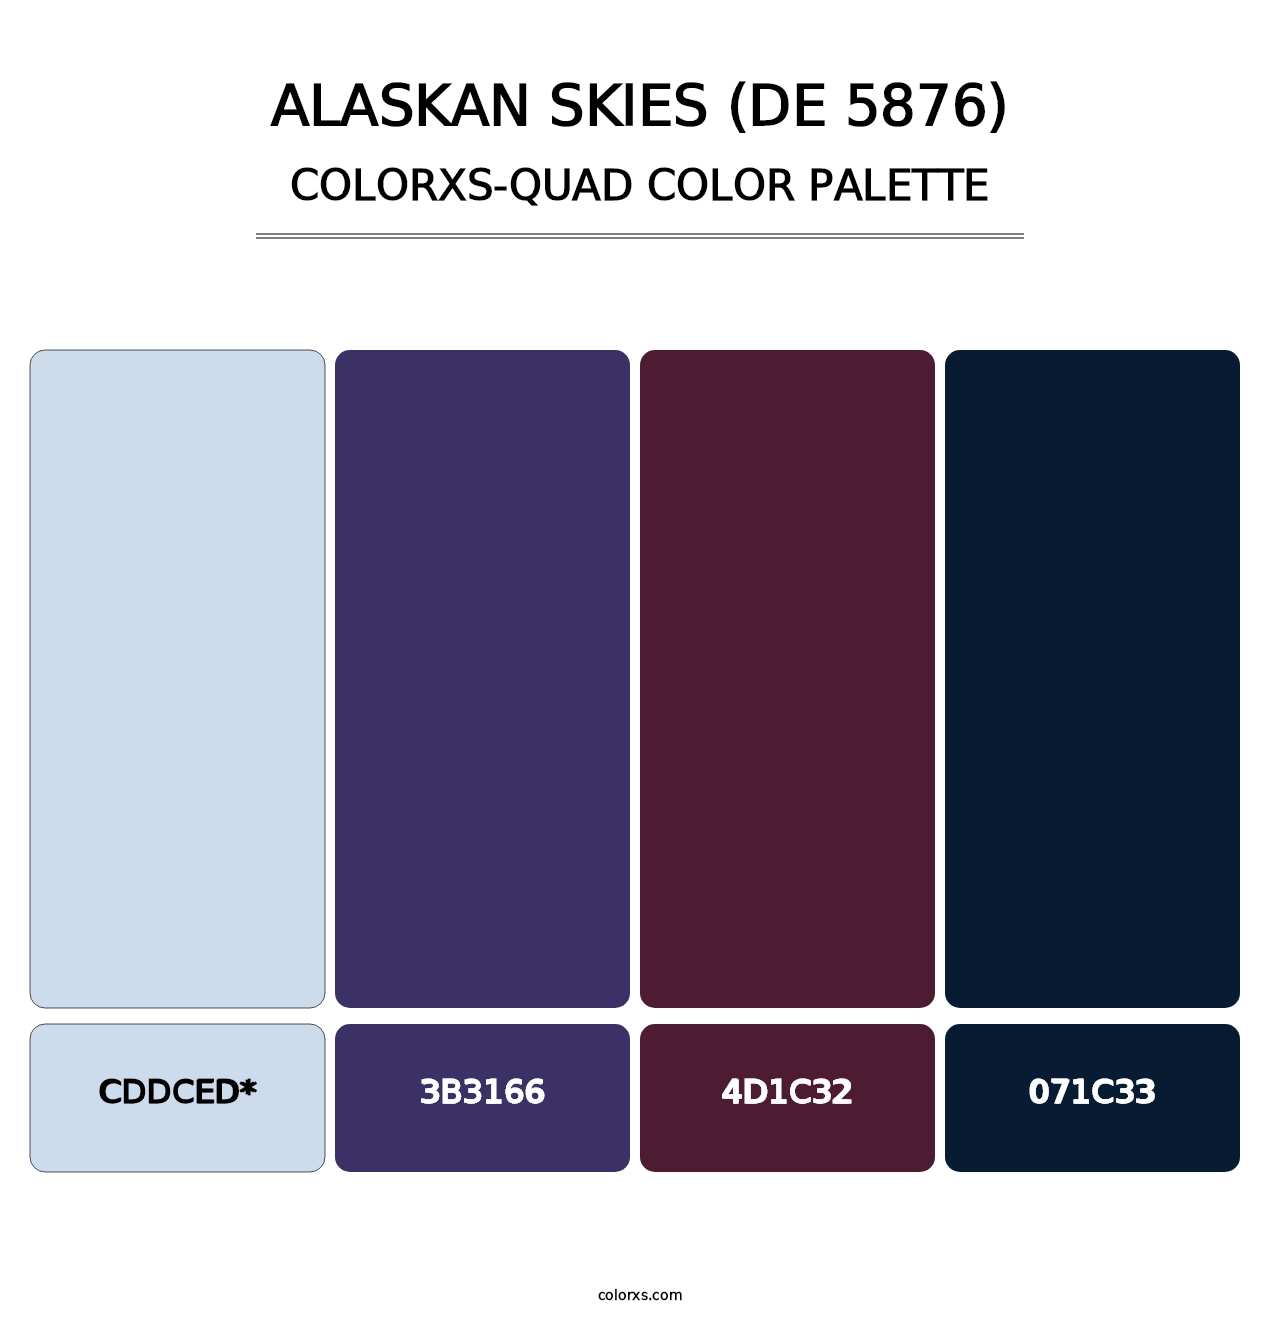 Alaskan Skies (DE 5876) - Colorxs Quad Palette